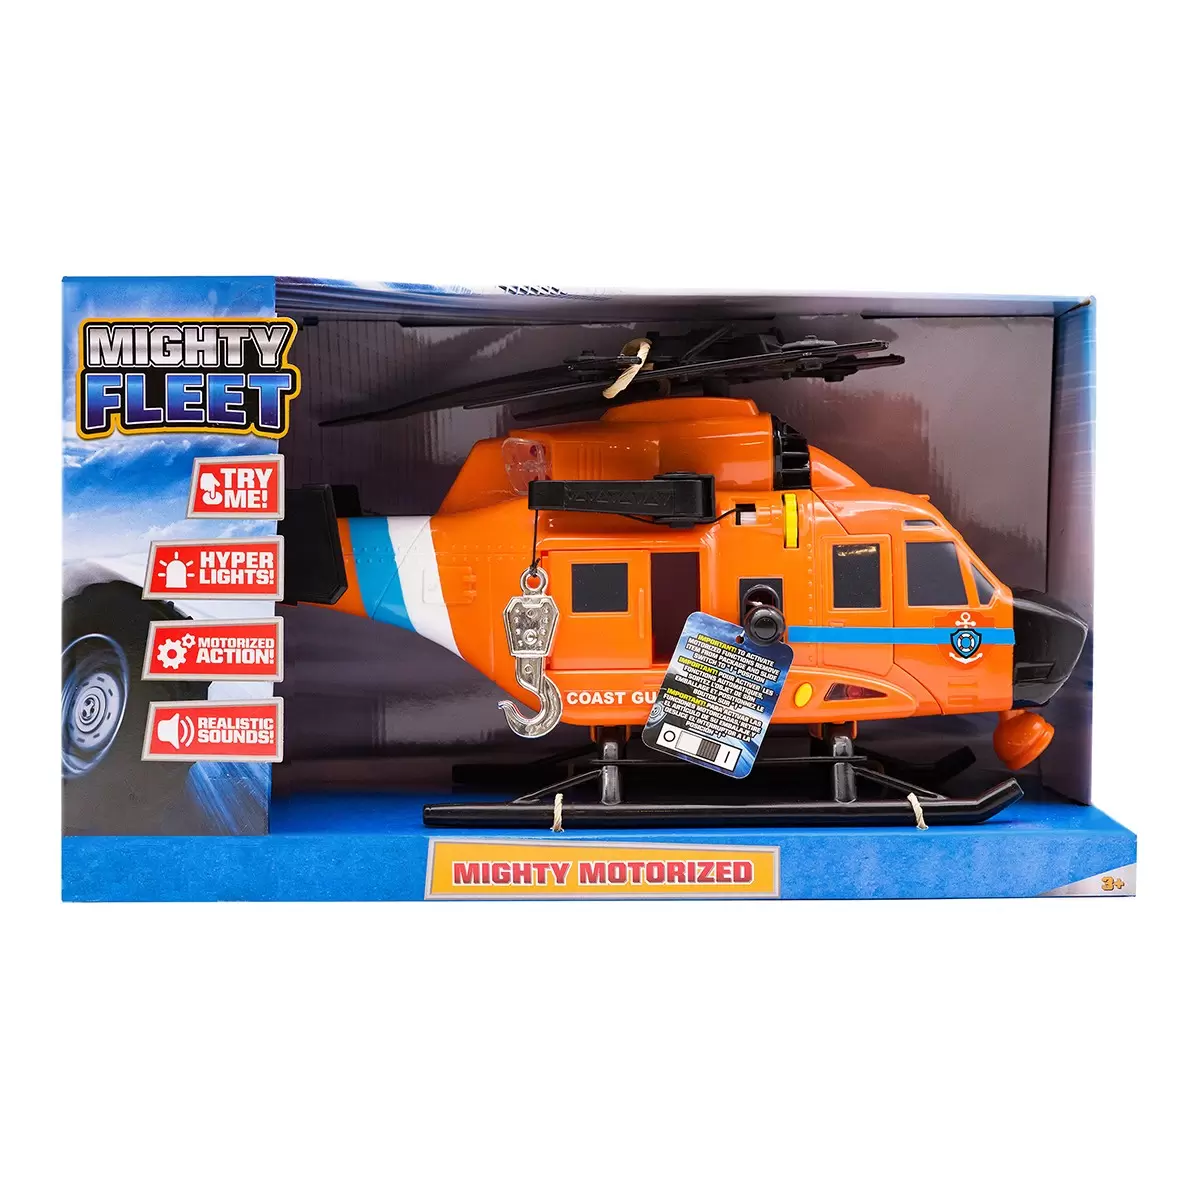 Mighty Fleet 緊急救援機動玩具車 多種款式選擇 直升機